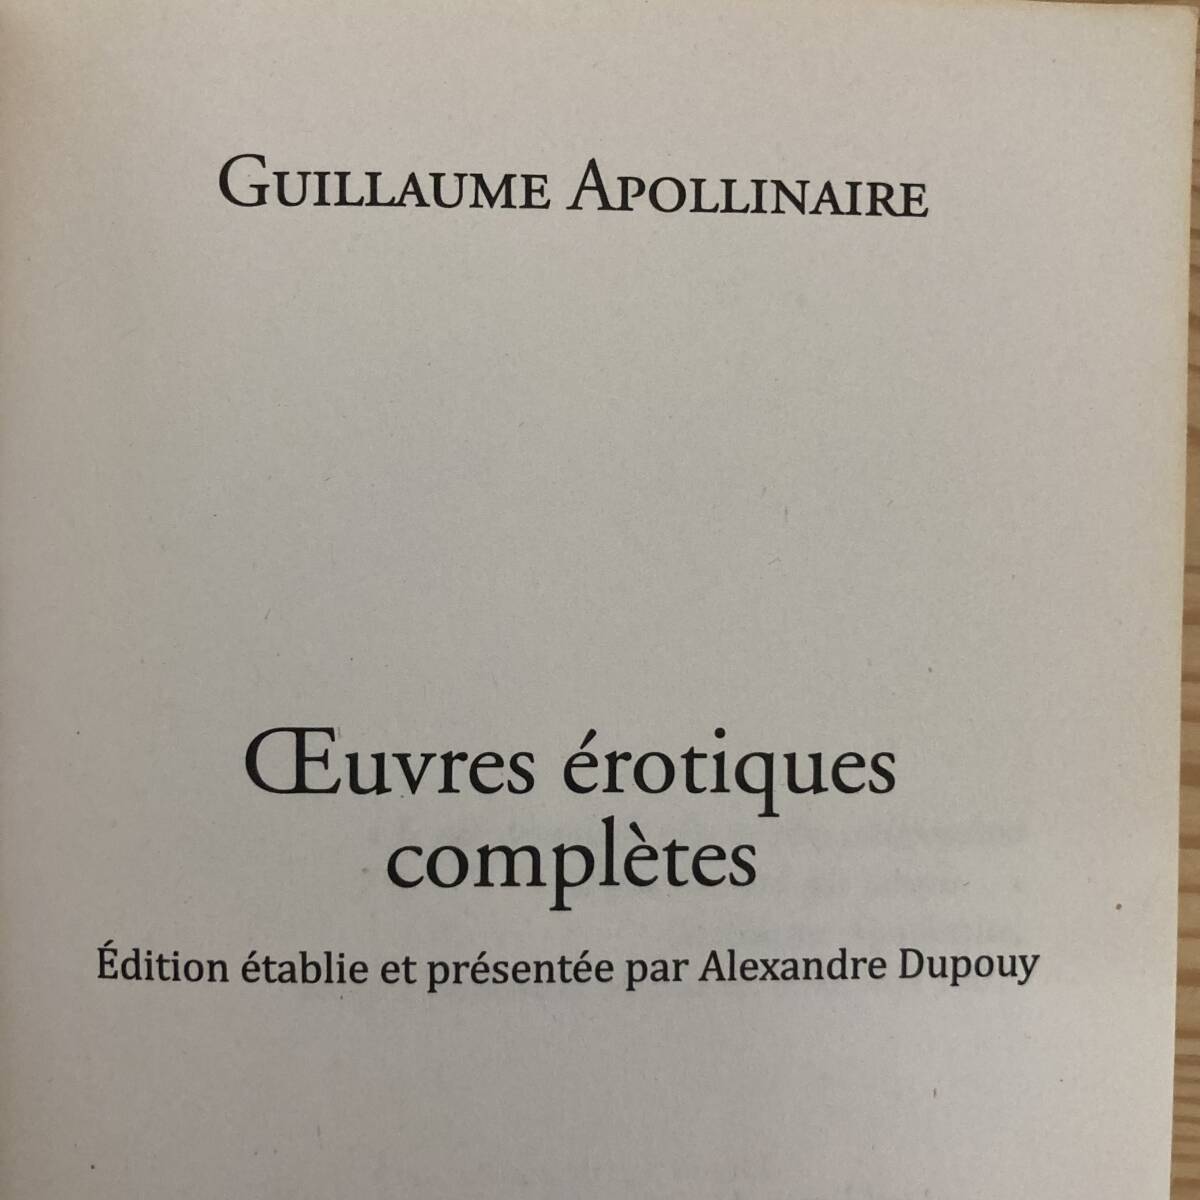 【仏語洋書】OEUVRES EROTIQUES COMPLETES / ギヨーム・アポリネール Guillaume Apollinaire（著）Alexandre Dupouy（編）の画像4